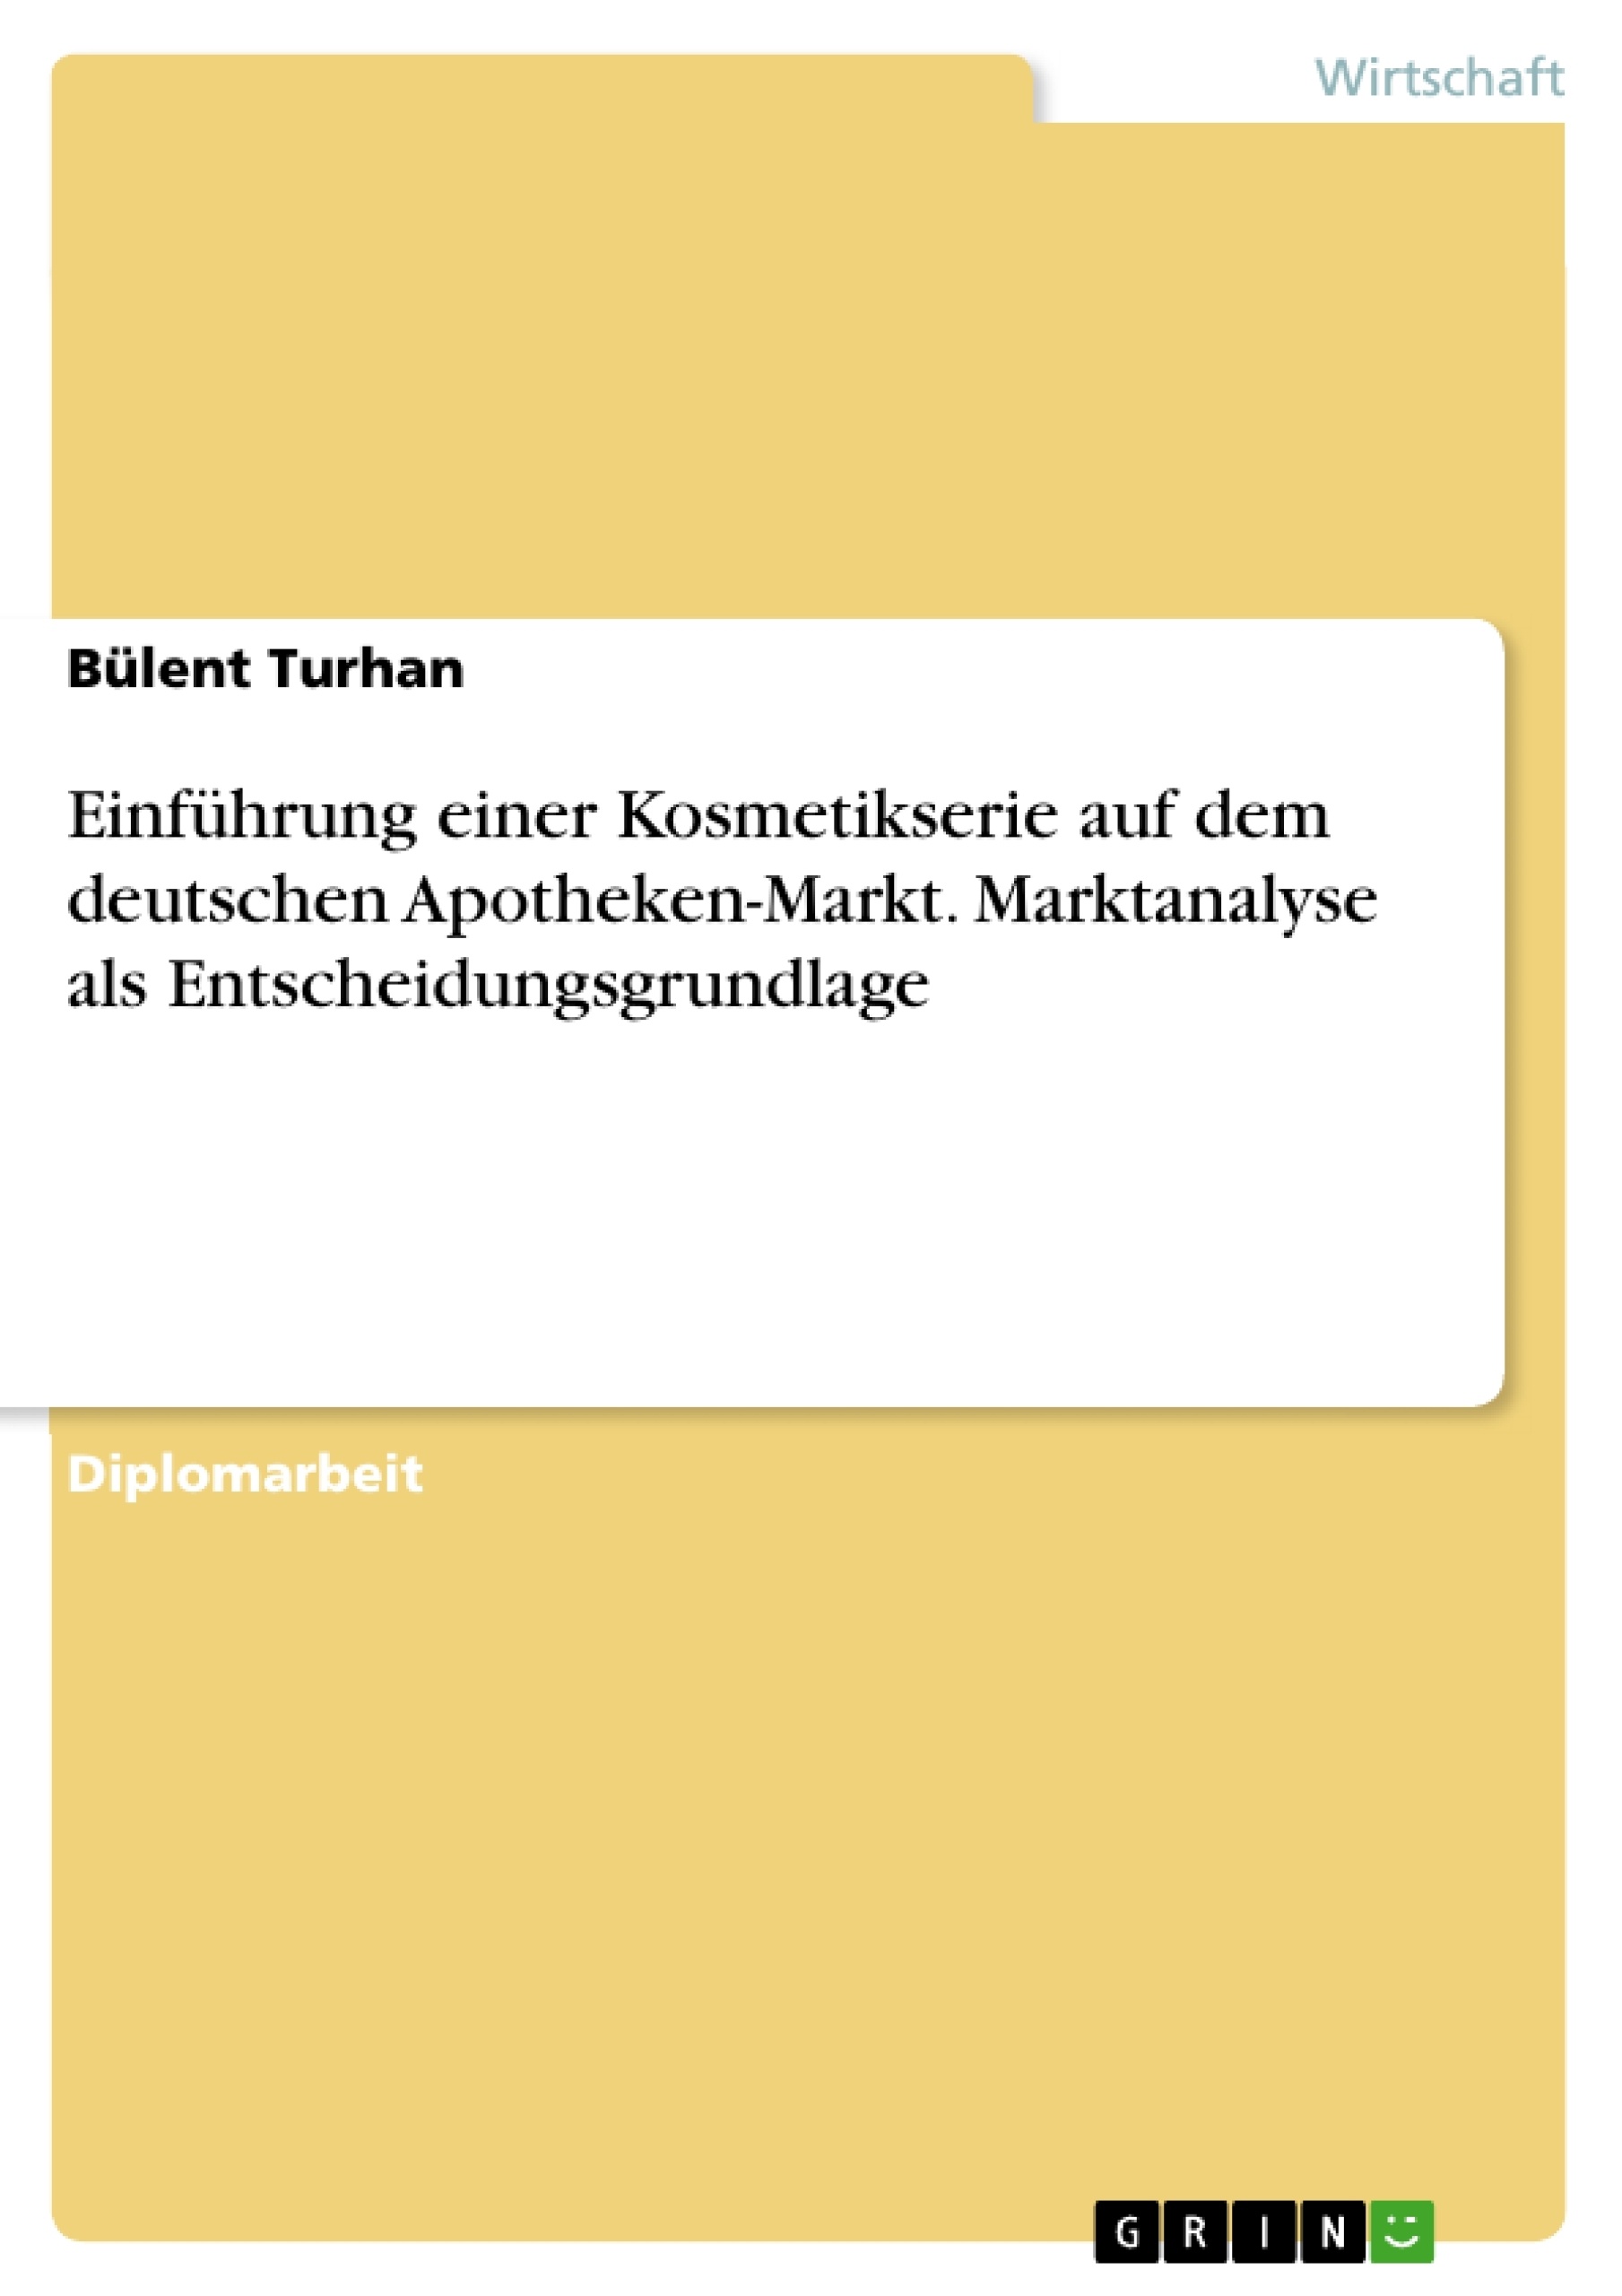 Título: Einführung einer Kosmetikserie auf dem deutschen Apotheken-Markt. Marktanalyse als Entscheidungsgrundlage